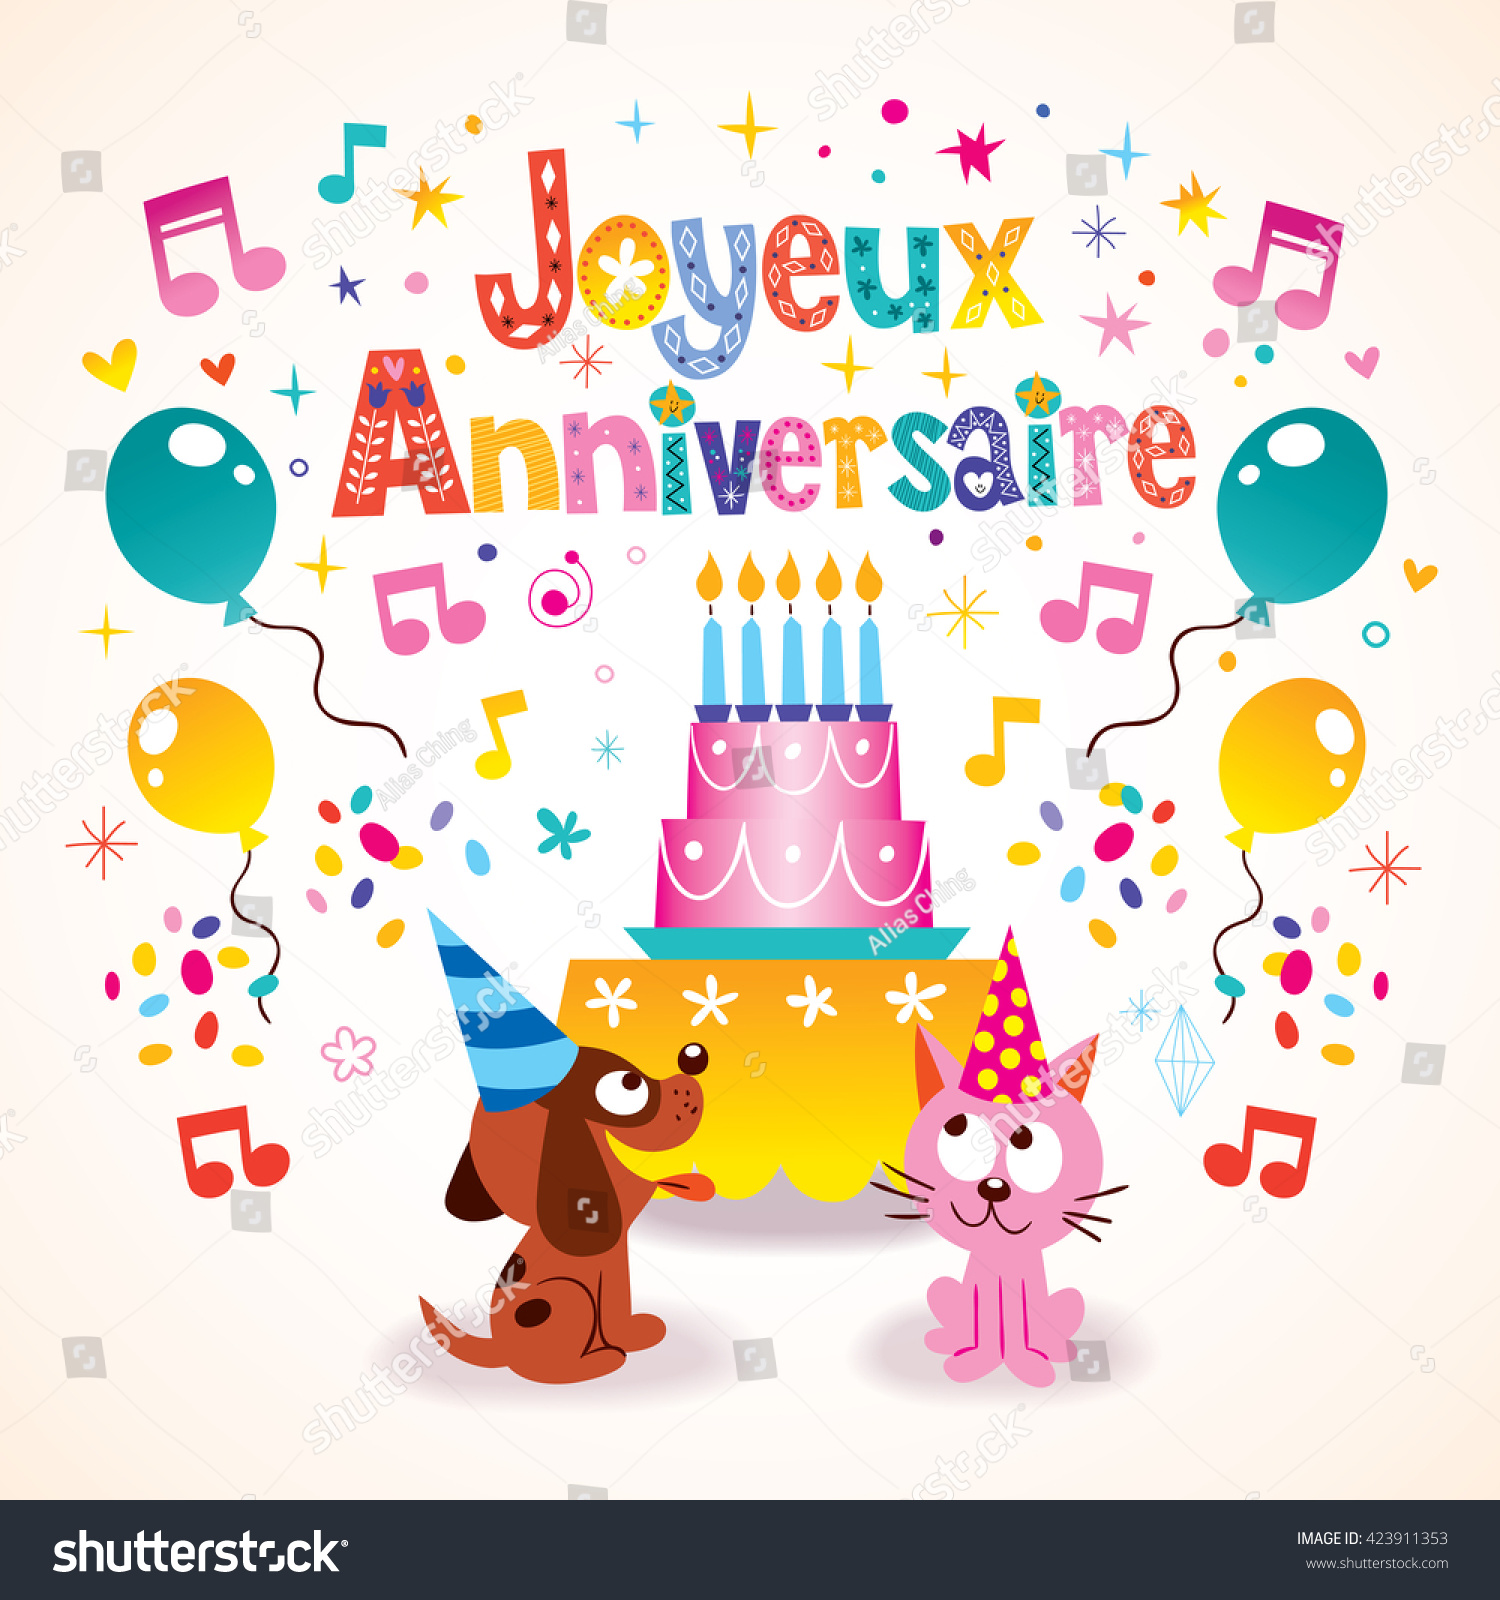 Image Vectorielle De Stock De Joyeux Anniversaire Happy Birthday French Kids